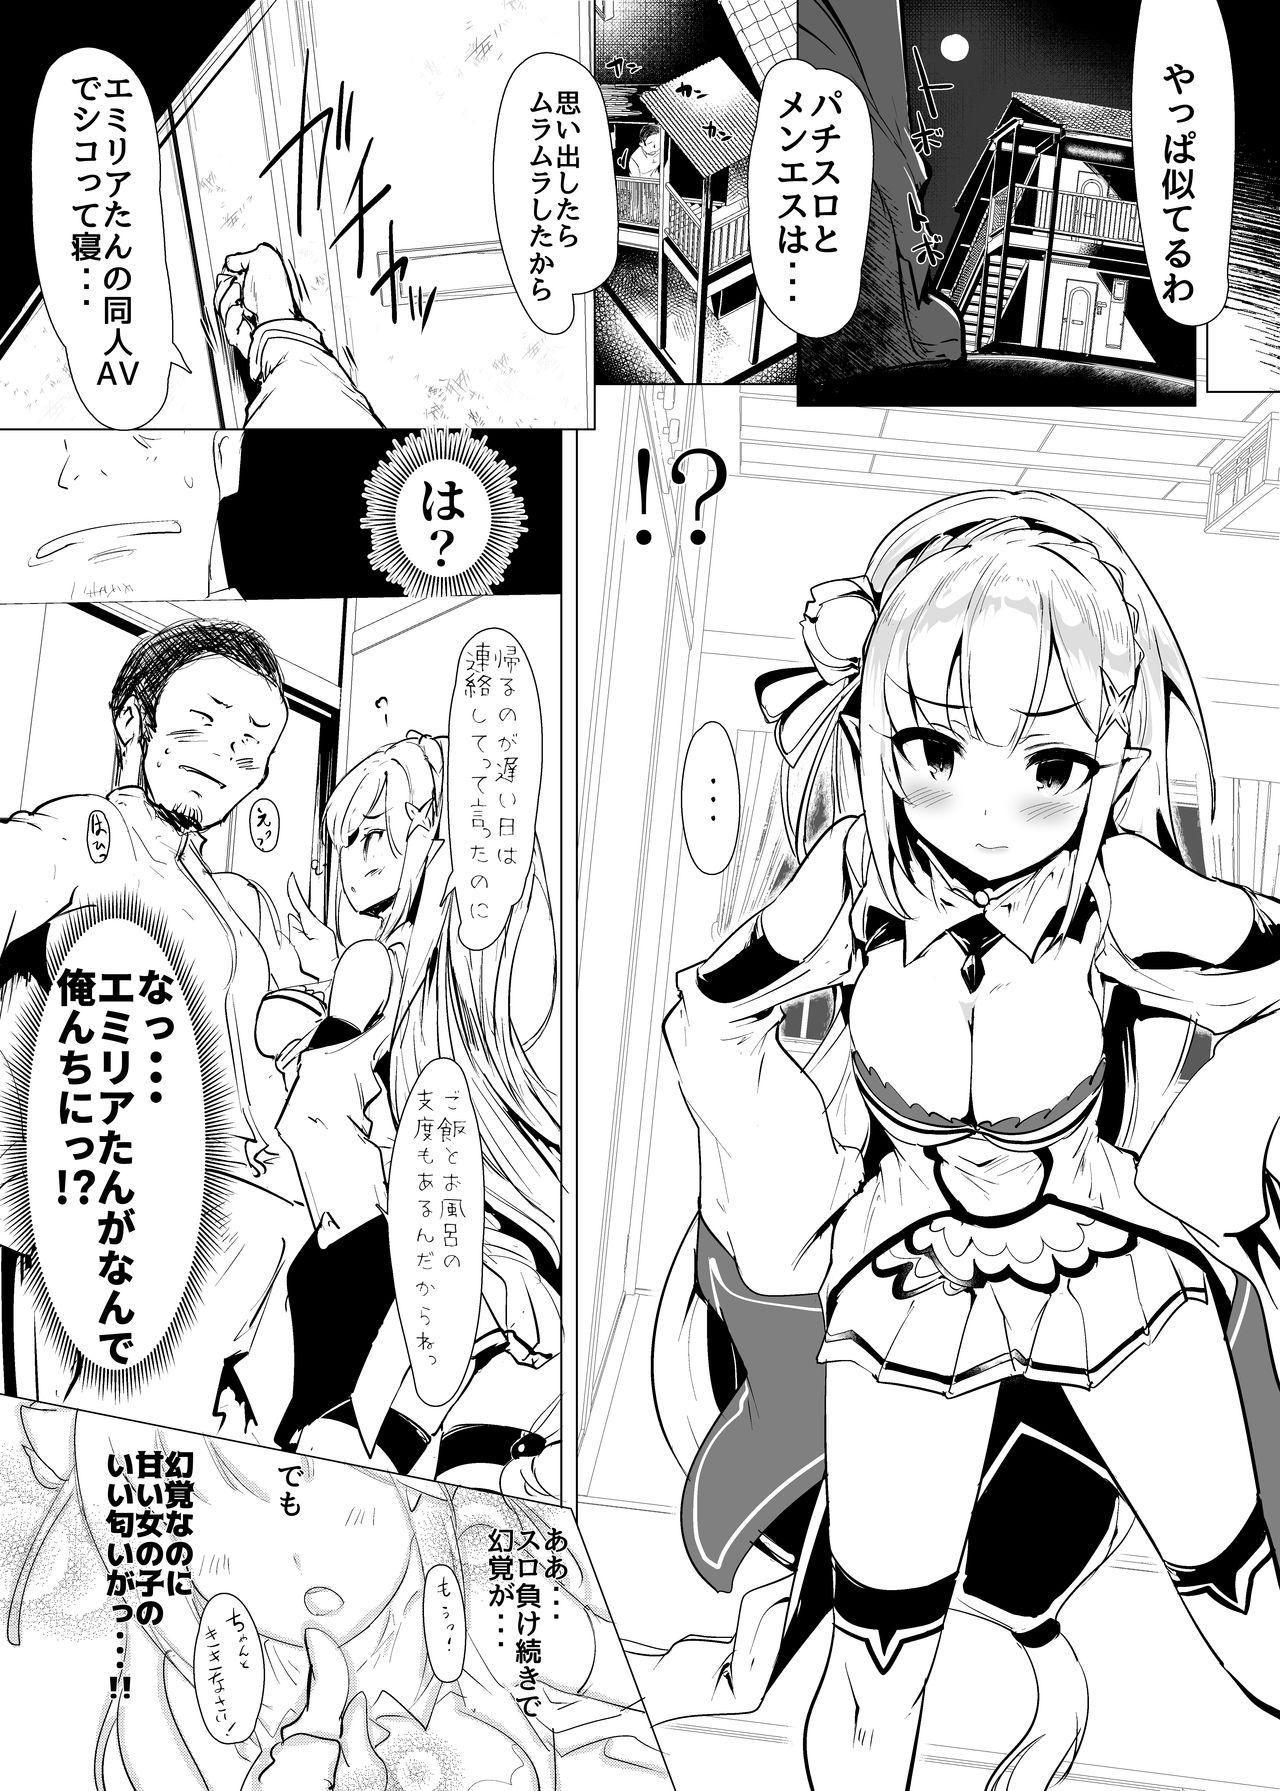 Sex Toy Re: Zero kara Hajimeru PachiSlot Seikatsu - Re zero kara hajimeru isekai seikatsu Good - Page 8